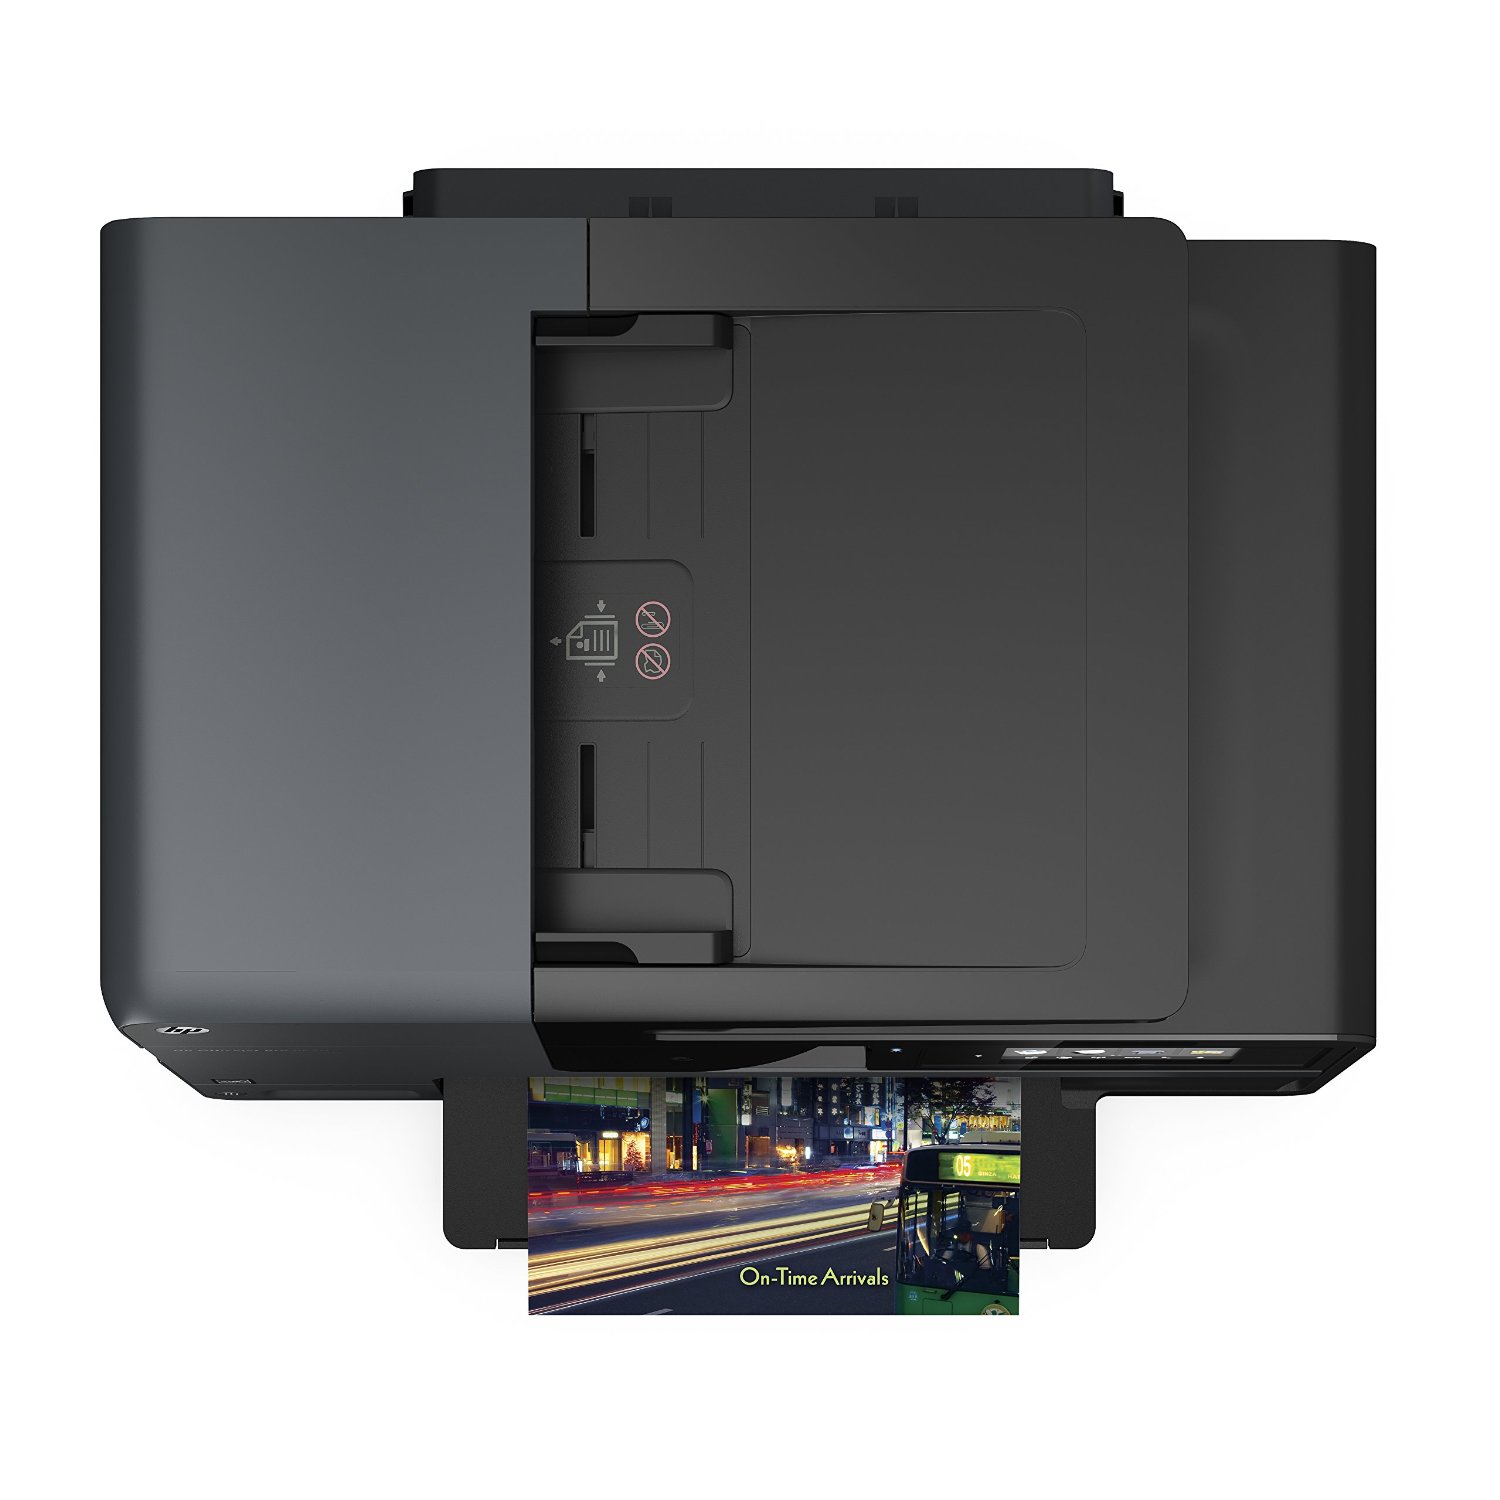 HP OfficeJet Pro 8620 Wireless All-in-One Color Inkjet Printer